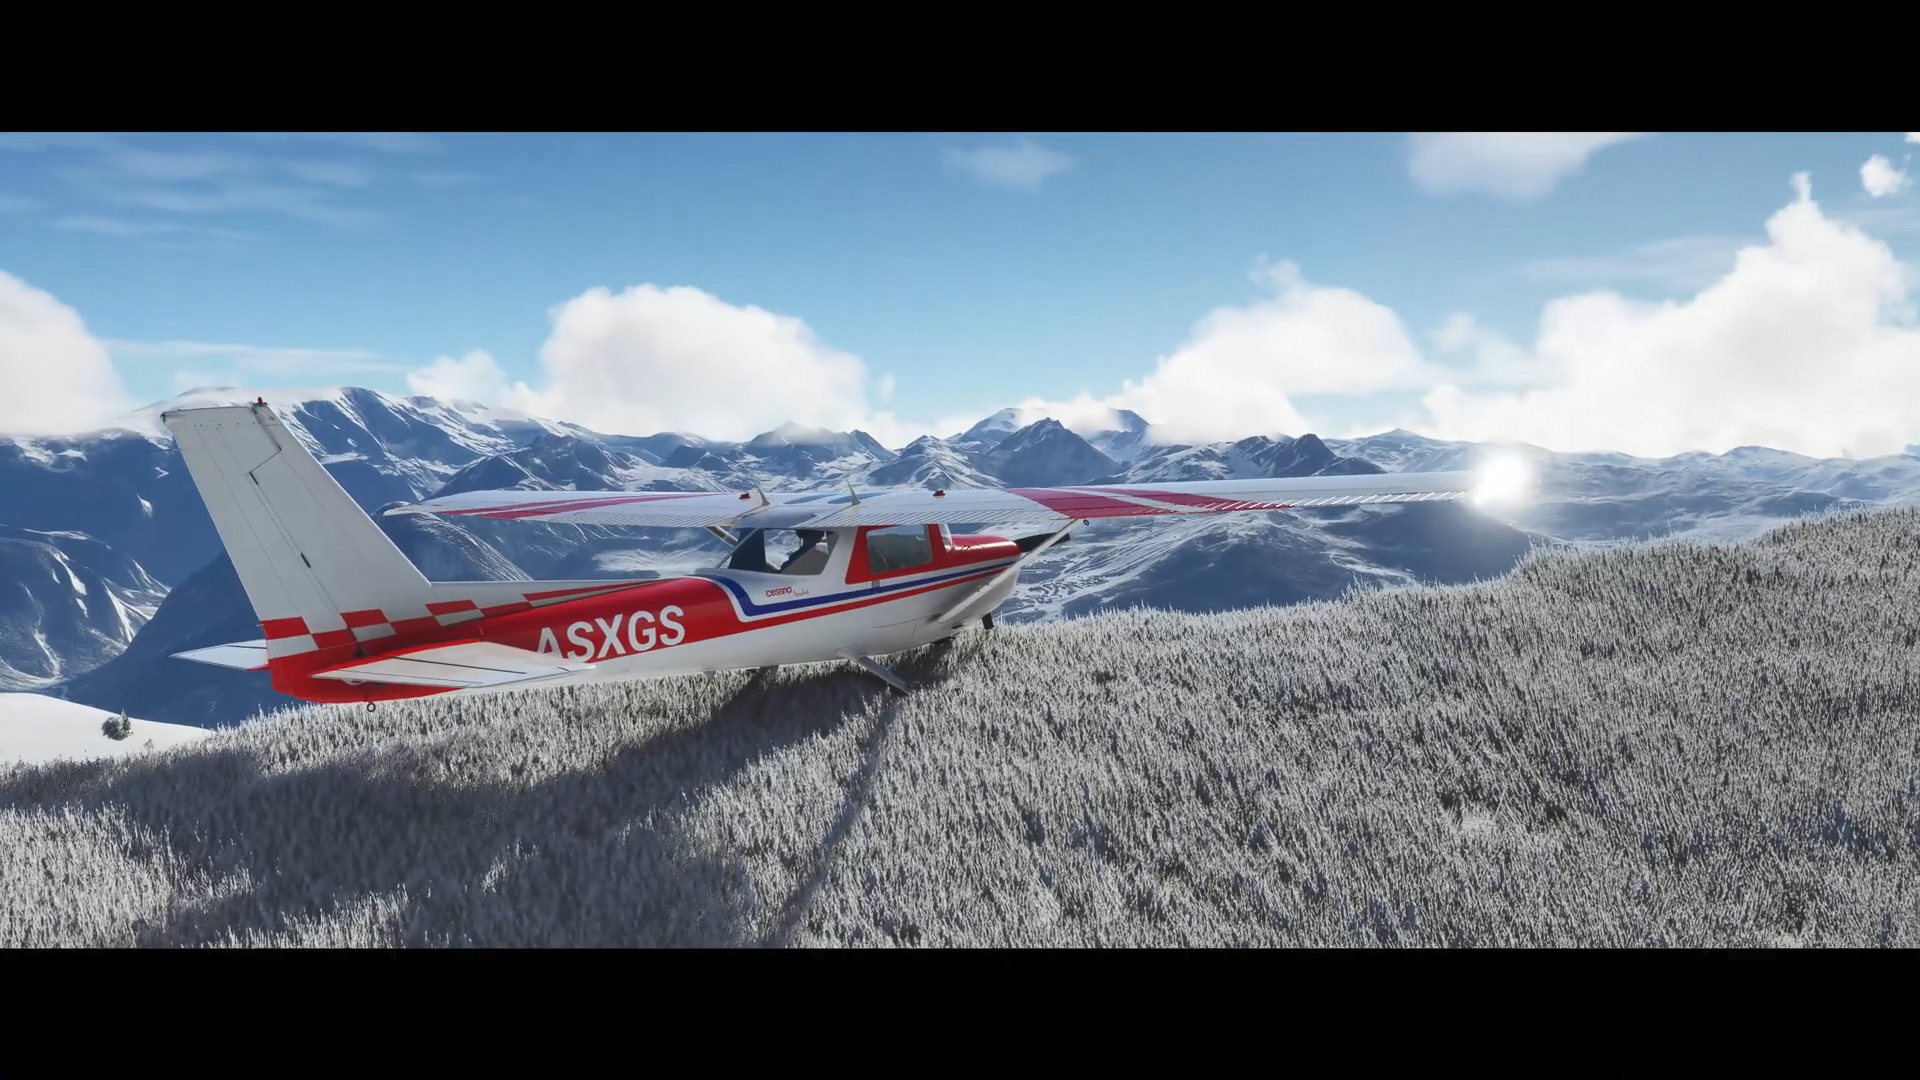 《微软飞行模拟》加入冰雪天气效果 与现实世界保持一致